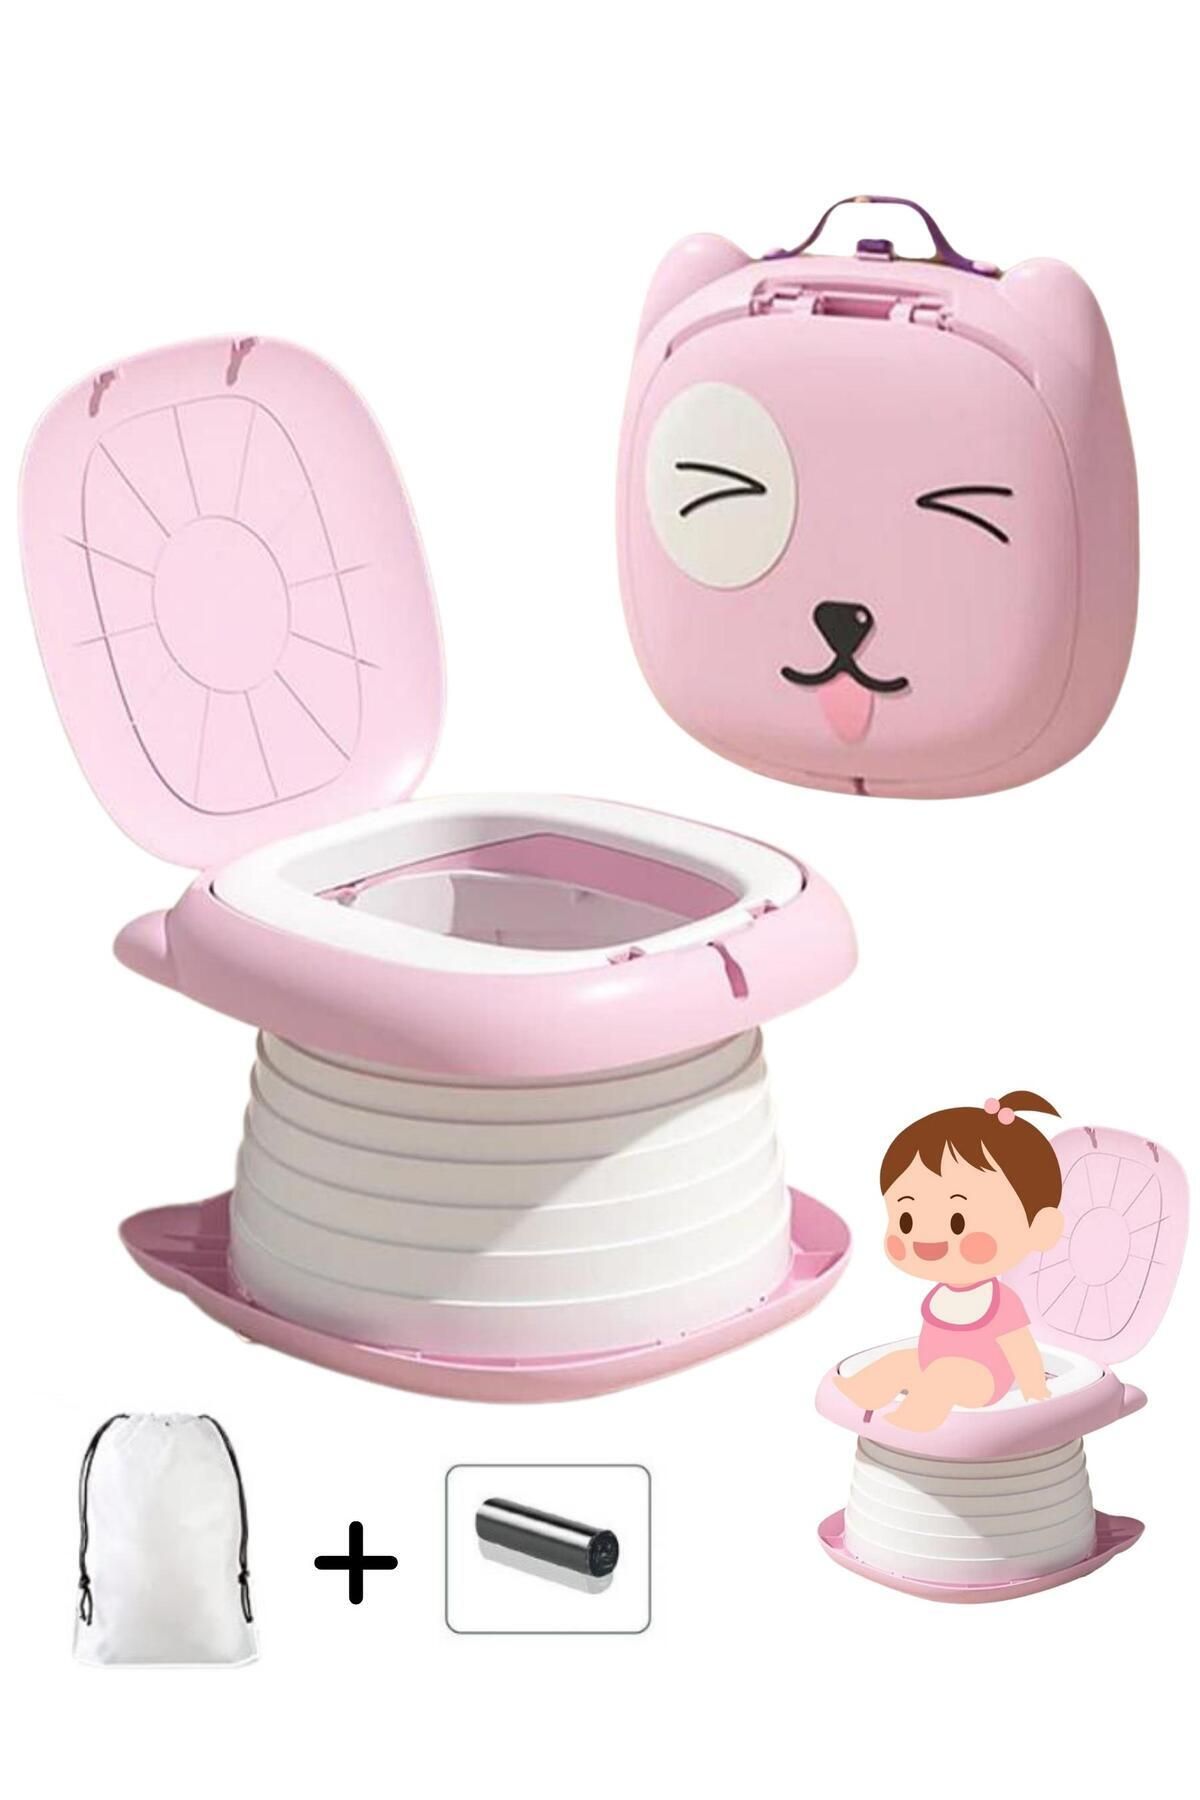 MooieBaby's Cat Potty Katlanabilir Çocuk Tuvaleti, Çok Fonksiyonlu Taşınabilir Alıştırma Lazımlığı, Carry Potty